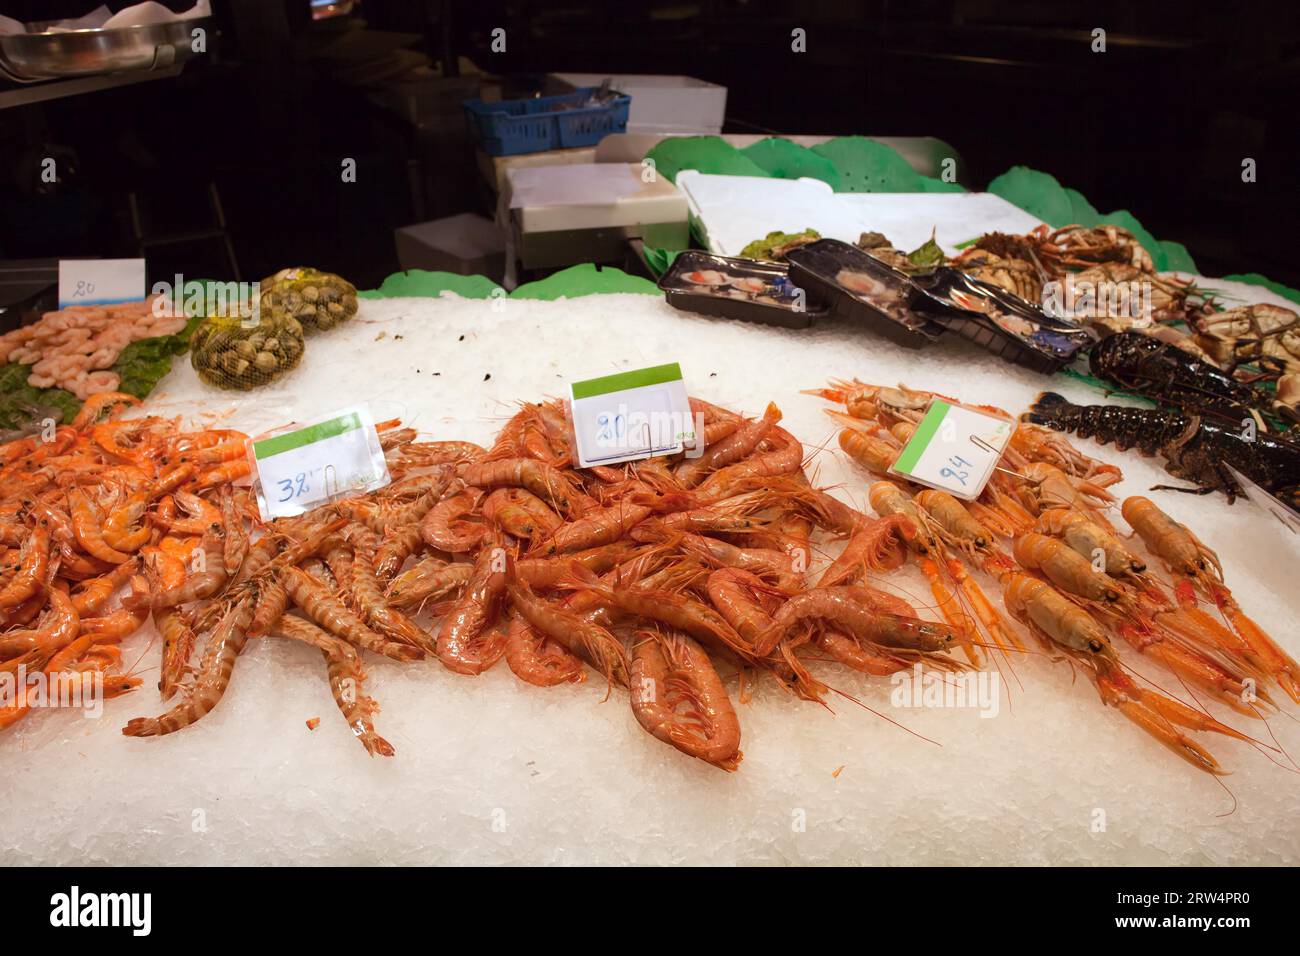 Fruits de mer sains, crevettes crues et fraîches de différentes sortes et prix en euros par kg sur un stand de marché alimentaire Banque D'Images